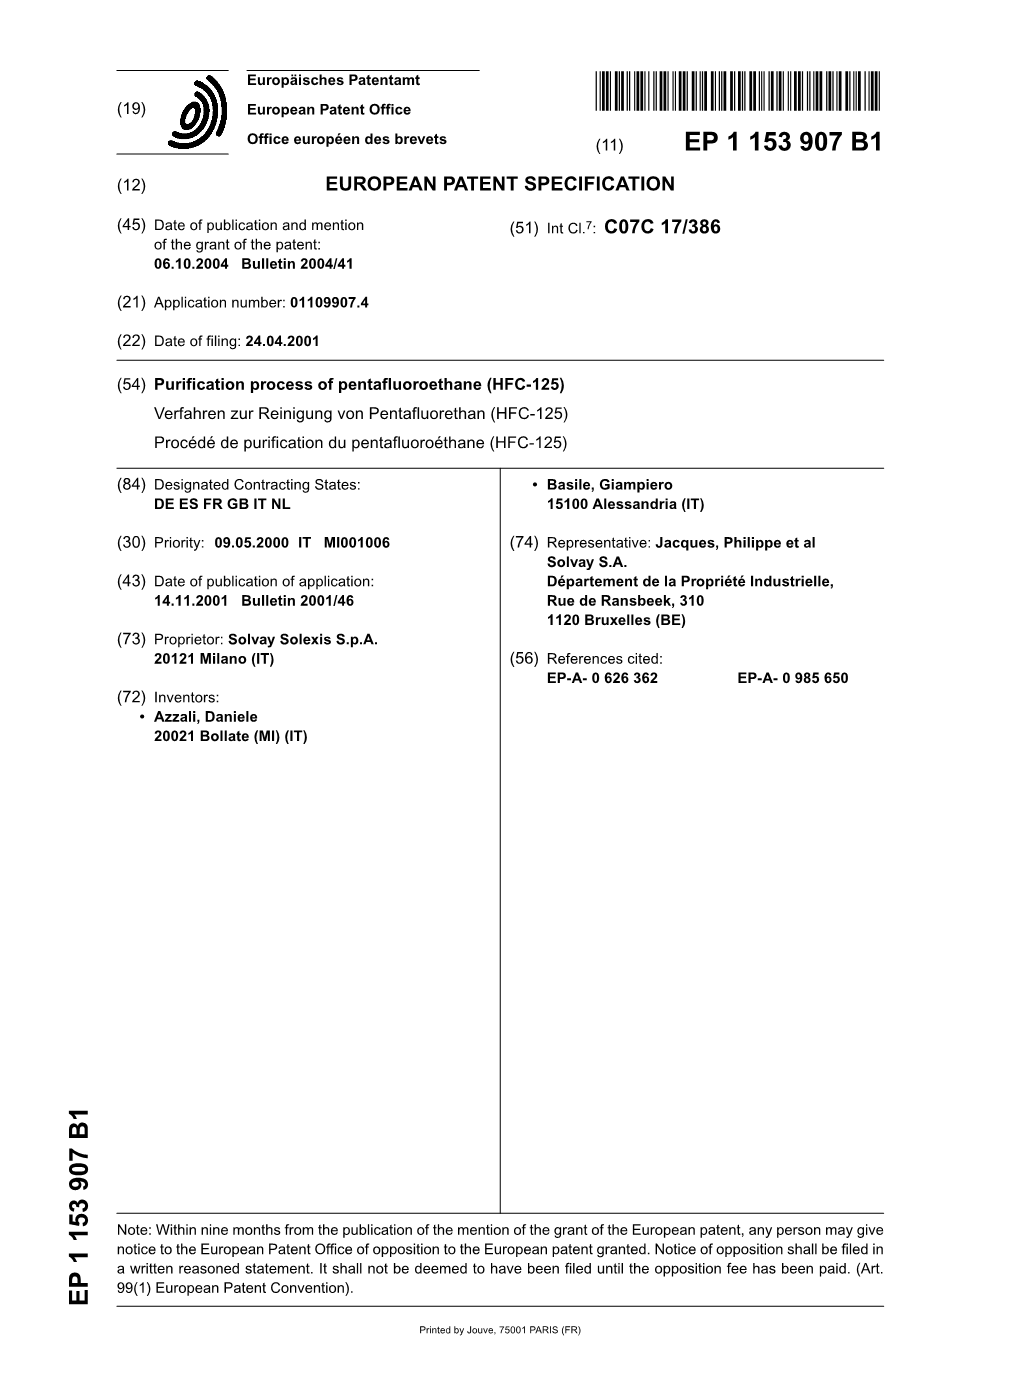 Purification Process of Pentafluoroethane (HFC-125) Verfahren Zur Reinigung Von Pentafluorethan (HFC-125) Procédé De Purification Du Pentafluoroéthane (HFC-125)